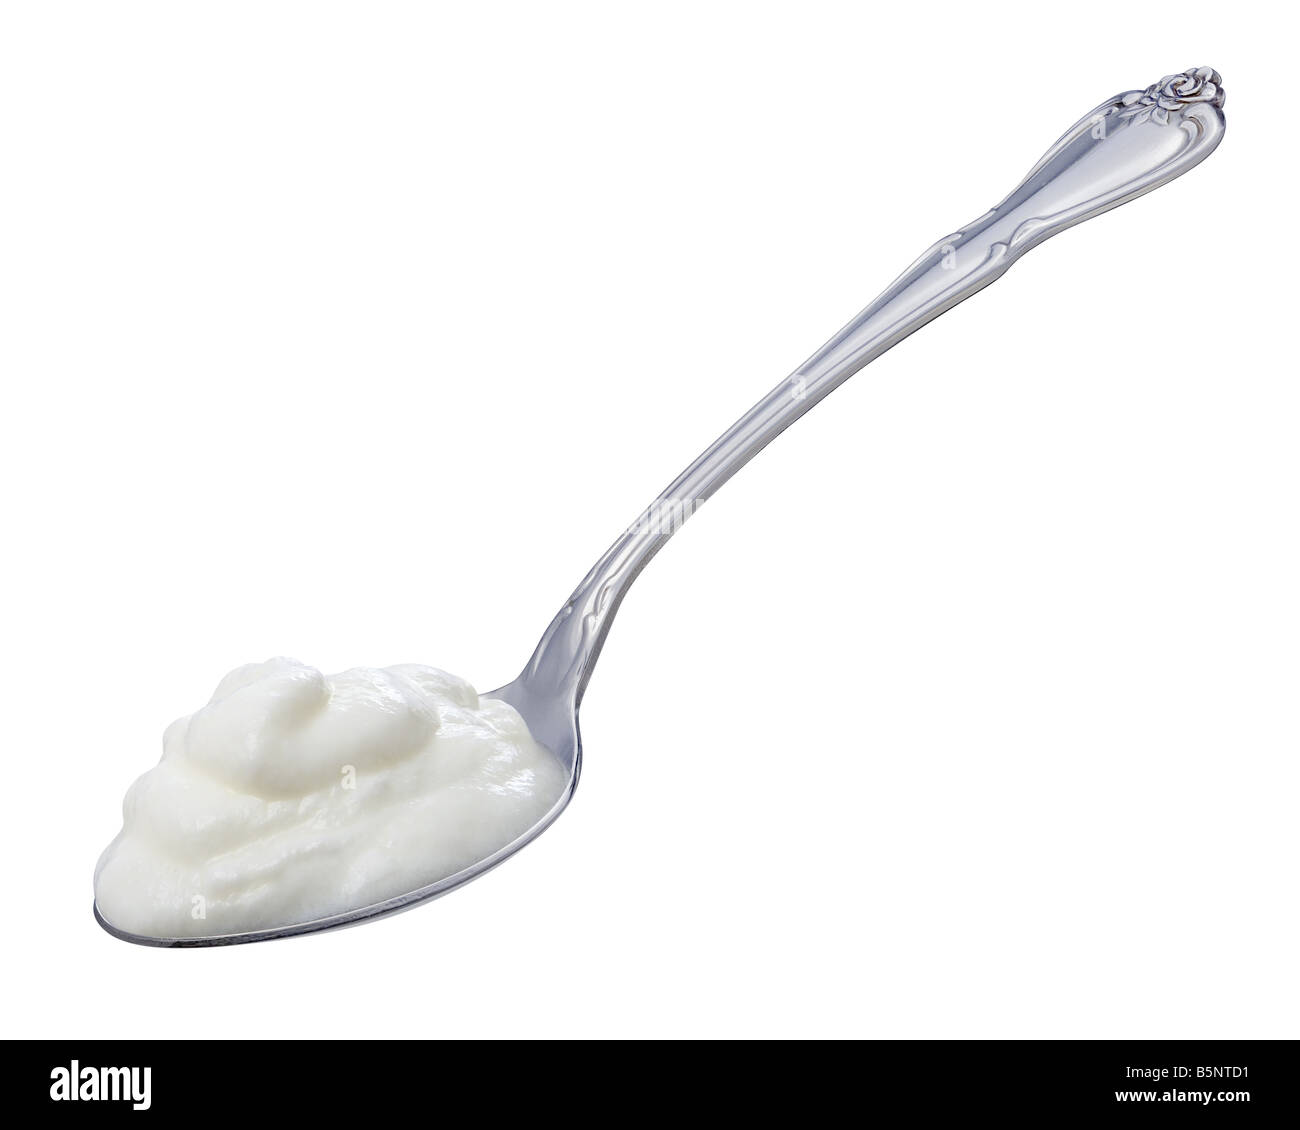 Joghurt-Löffel isoliert auf einem weißen Hintergrund. Stockfoto